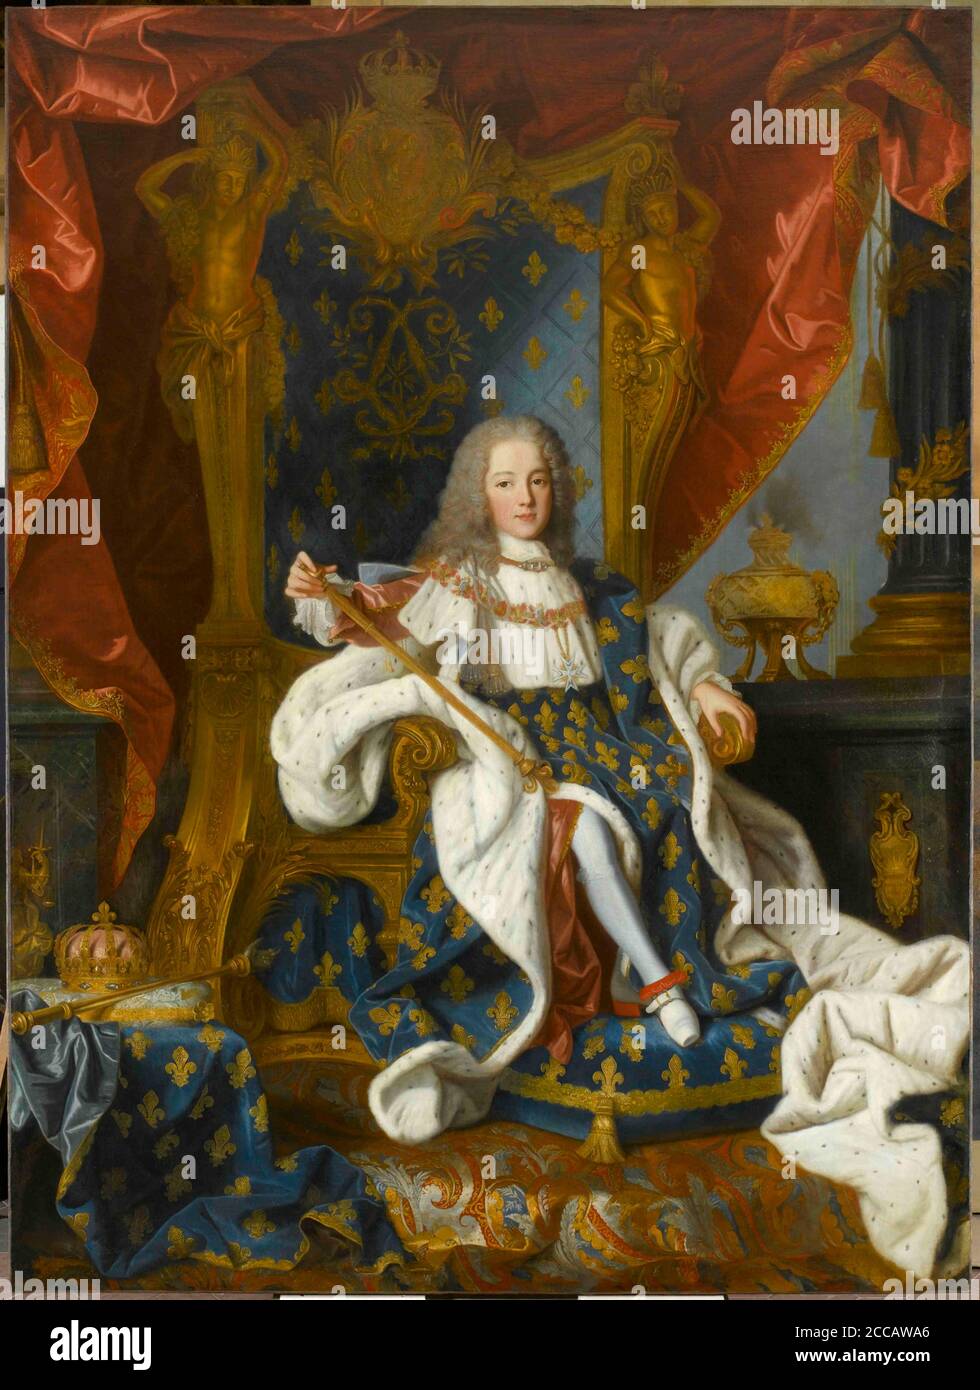 Portrait of Louis XV (1710-1774) king of France, at the age of 9. Museum: Musée de l'Histoire de France, Château de Versailles. Author: JEAN RANC. Stock Photo